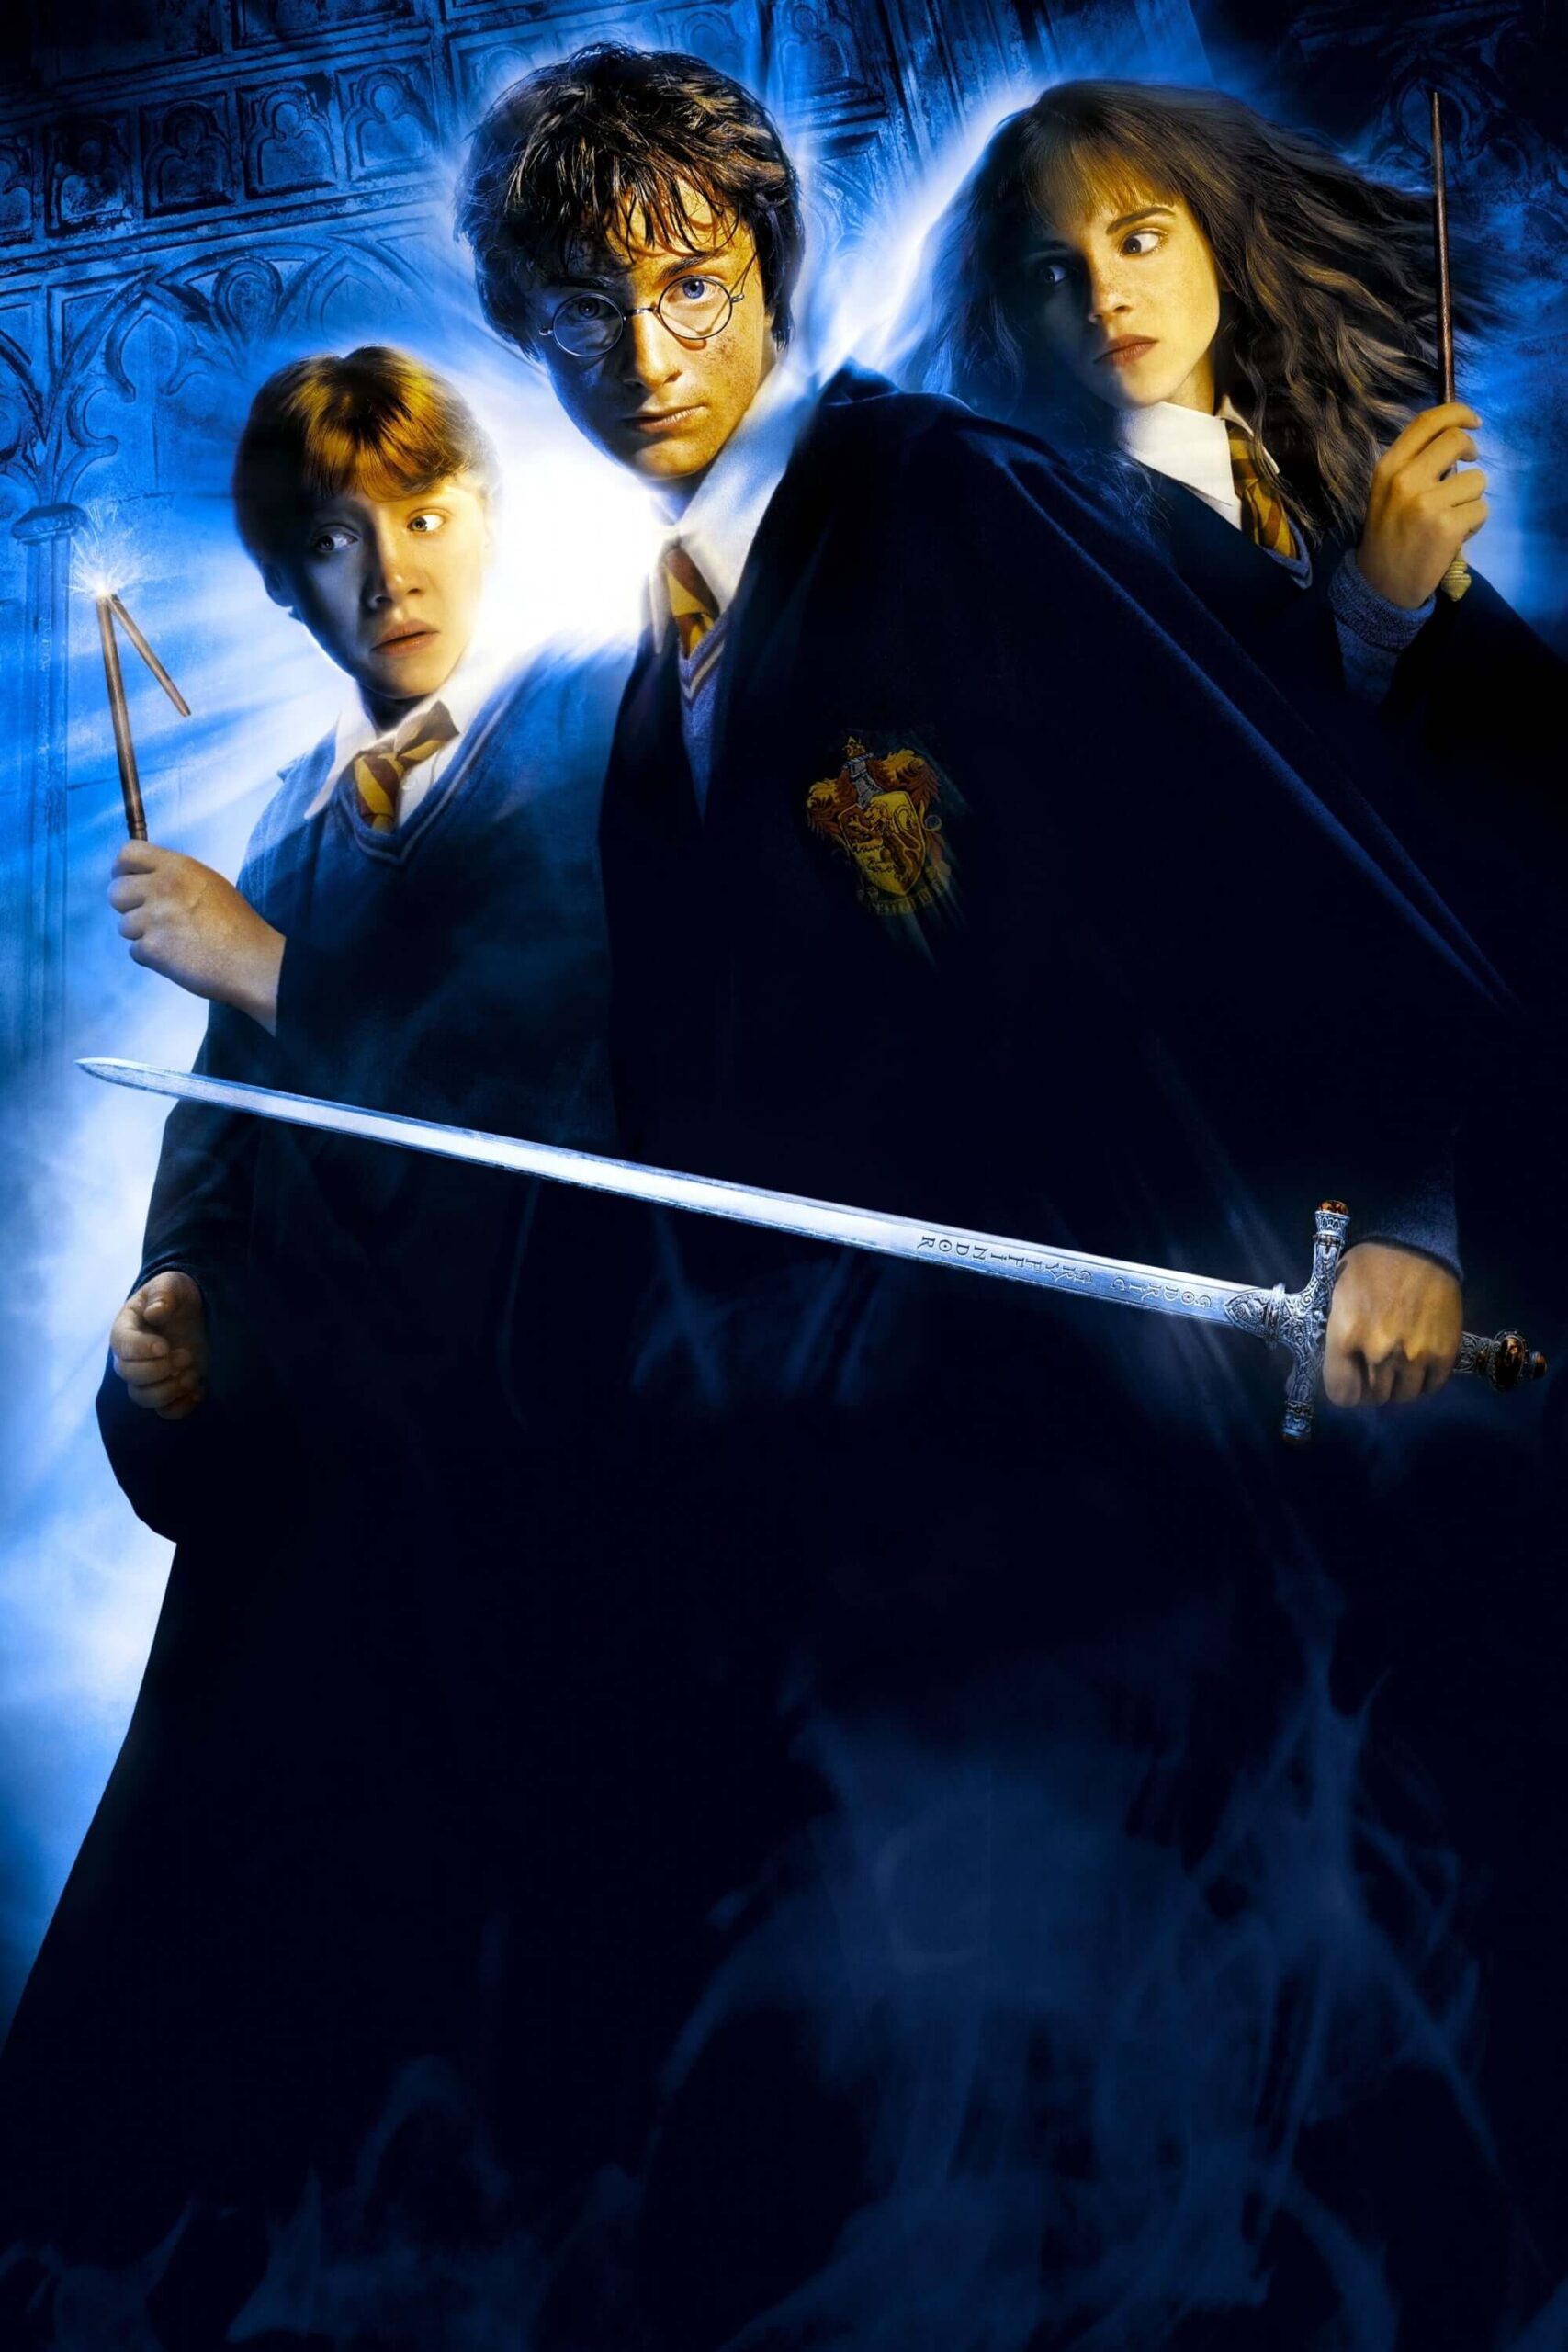 هری پاتر و تالار اسرار (Harry Potter and the Chamber of Secrets)